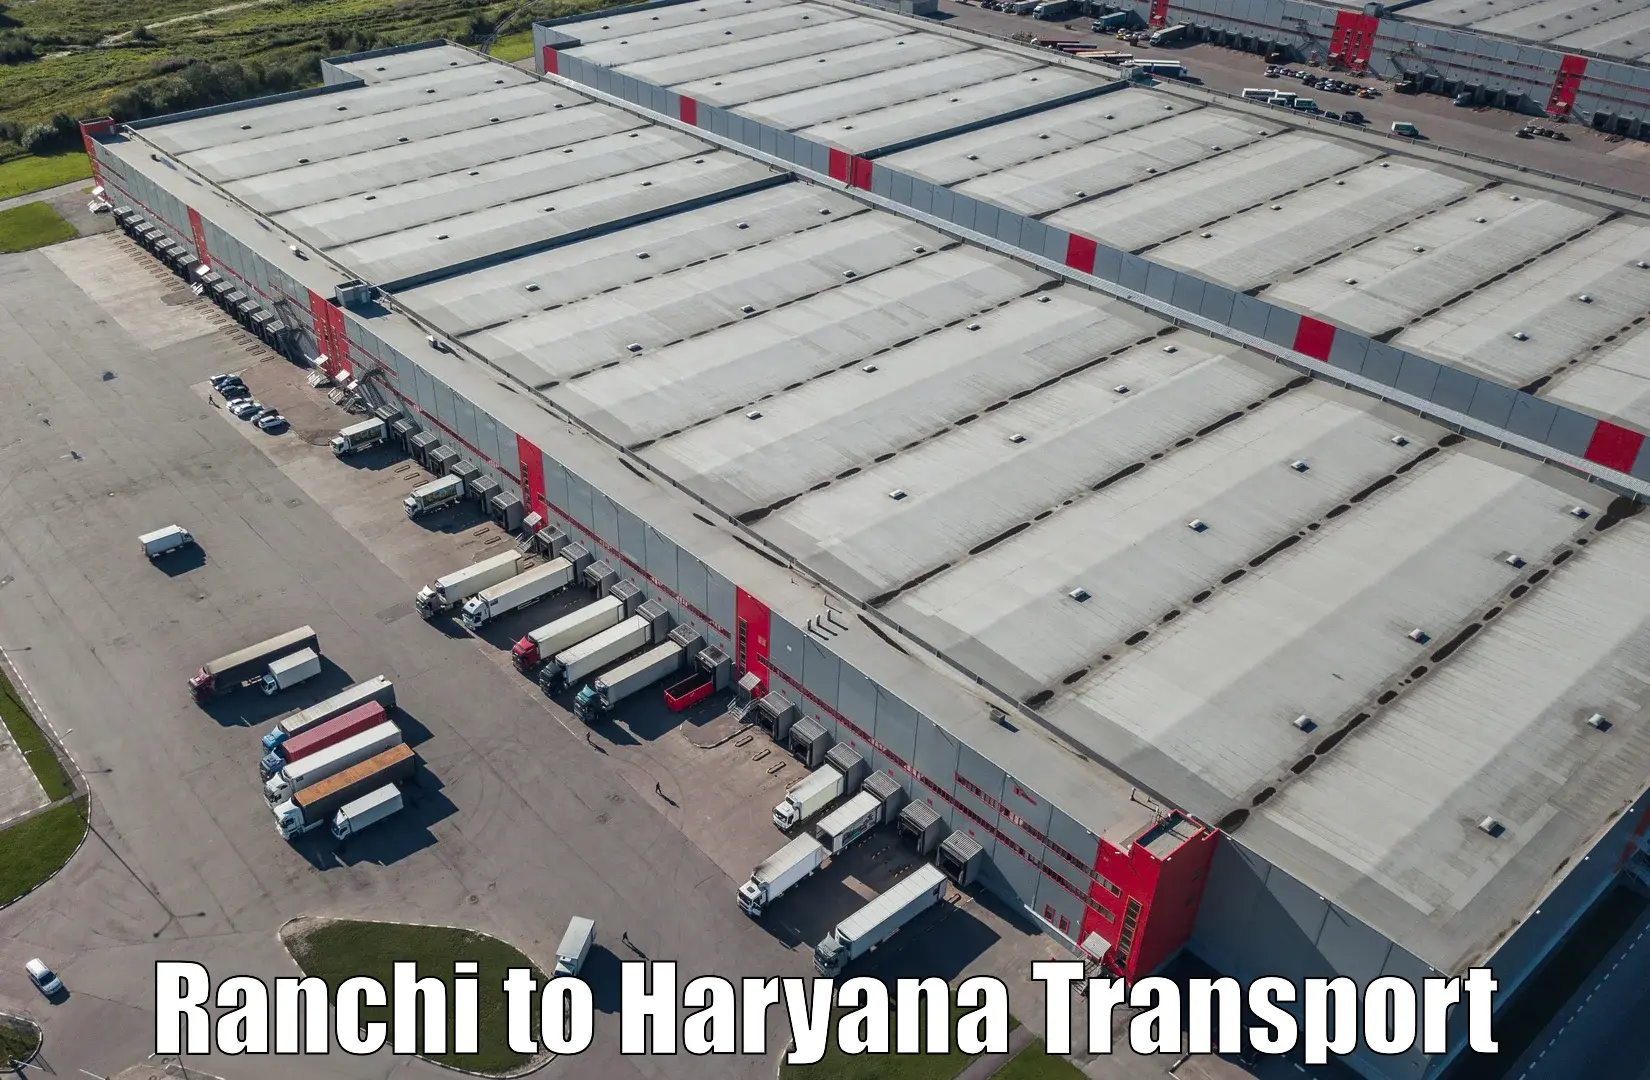 Furniture transport service Ranchi to Barwala